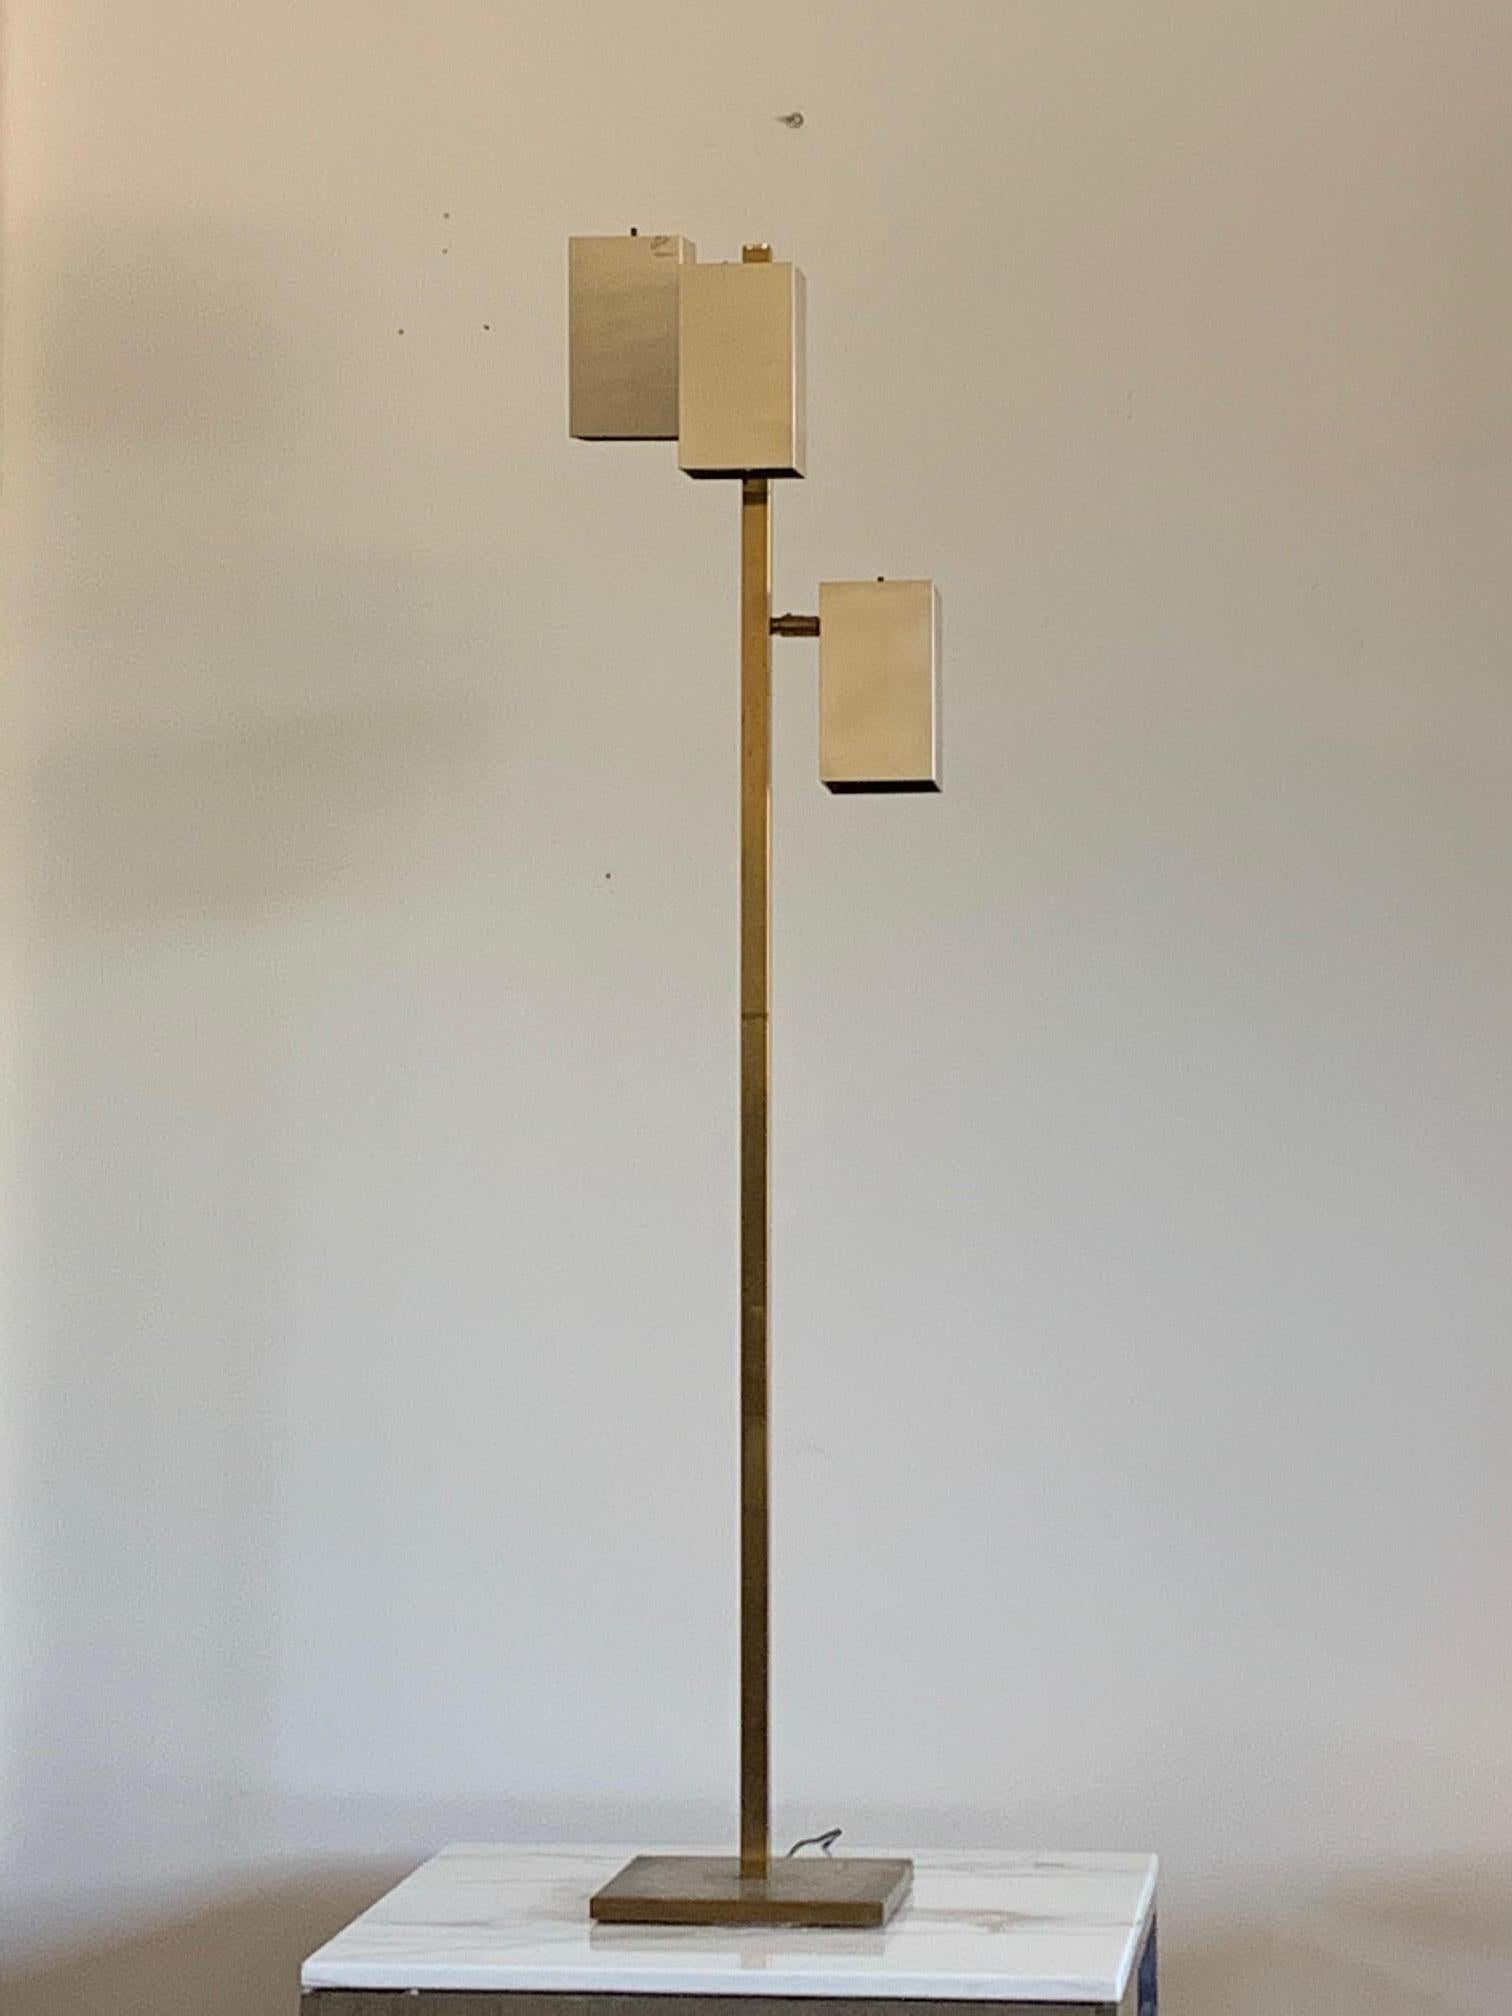 Lampadaire en laiton de Koch & Lowy avec trois cubes rectangulaires articulés montés sur la tige verticale carrée en laiton, sur une base carrée en laiton. Les cubes lumineux s'allument et s'éteignent indépendamment les uns des autres et pivotent